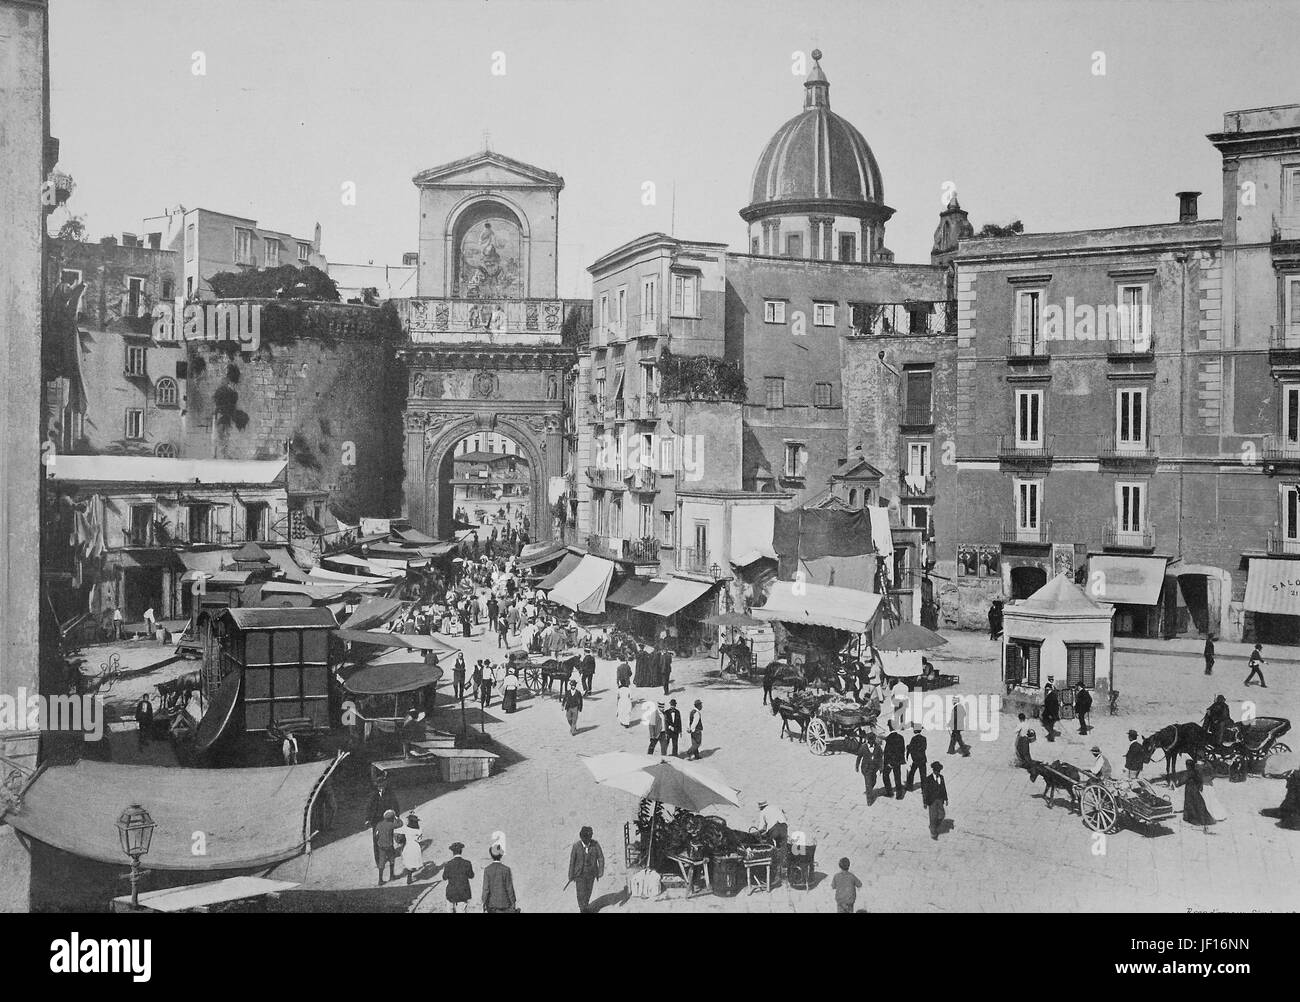 Historische Bilder von Napoli, Neapel, Neapel, Porta Capuana, Italien, digitale Reproduktion von einem ursprünglichen Drucken aus dem Jahr 1890 verbessert Stockfoto